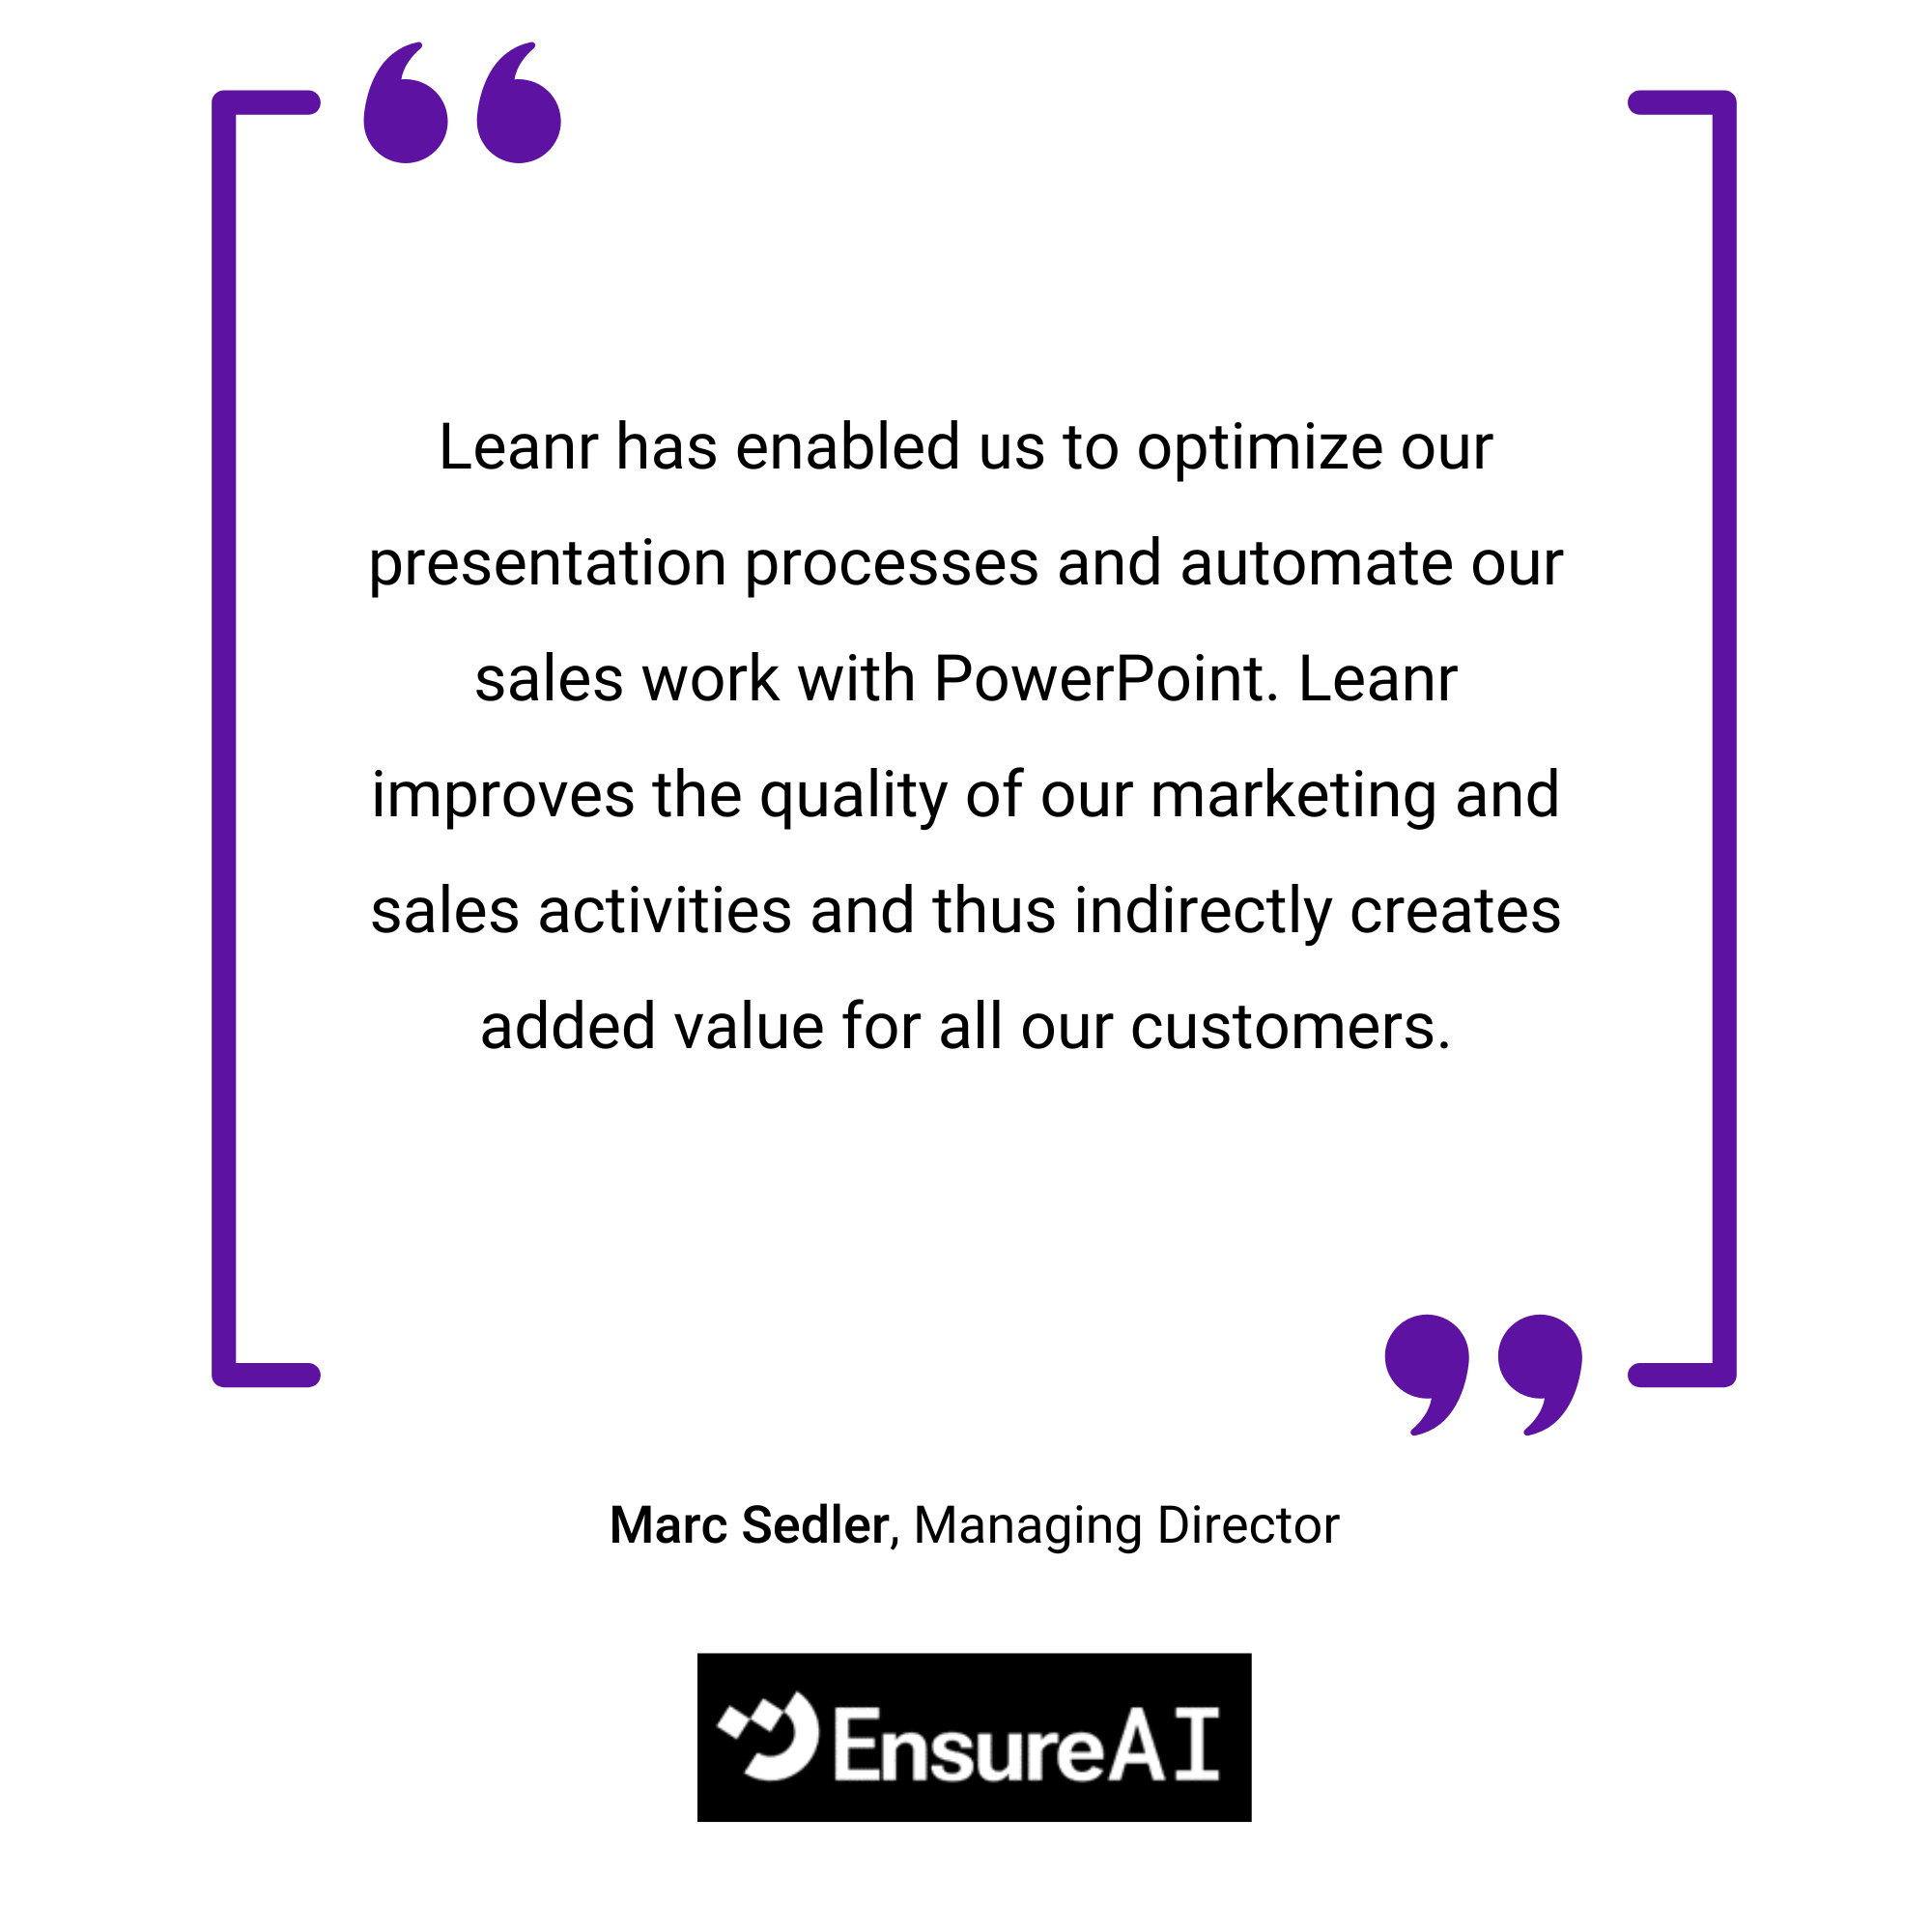 Eine Werbegrafik mit einer Empfehlung von Marc Sedler bei EnsureAI, der Leantran für die Verbesserung der PowerPoint-Arbeit durch Automatisierung lobt, angezeigt in einem violett umrandeten Rahmen.